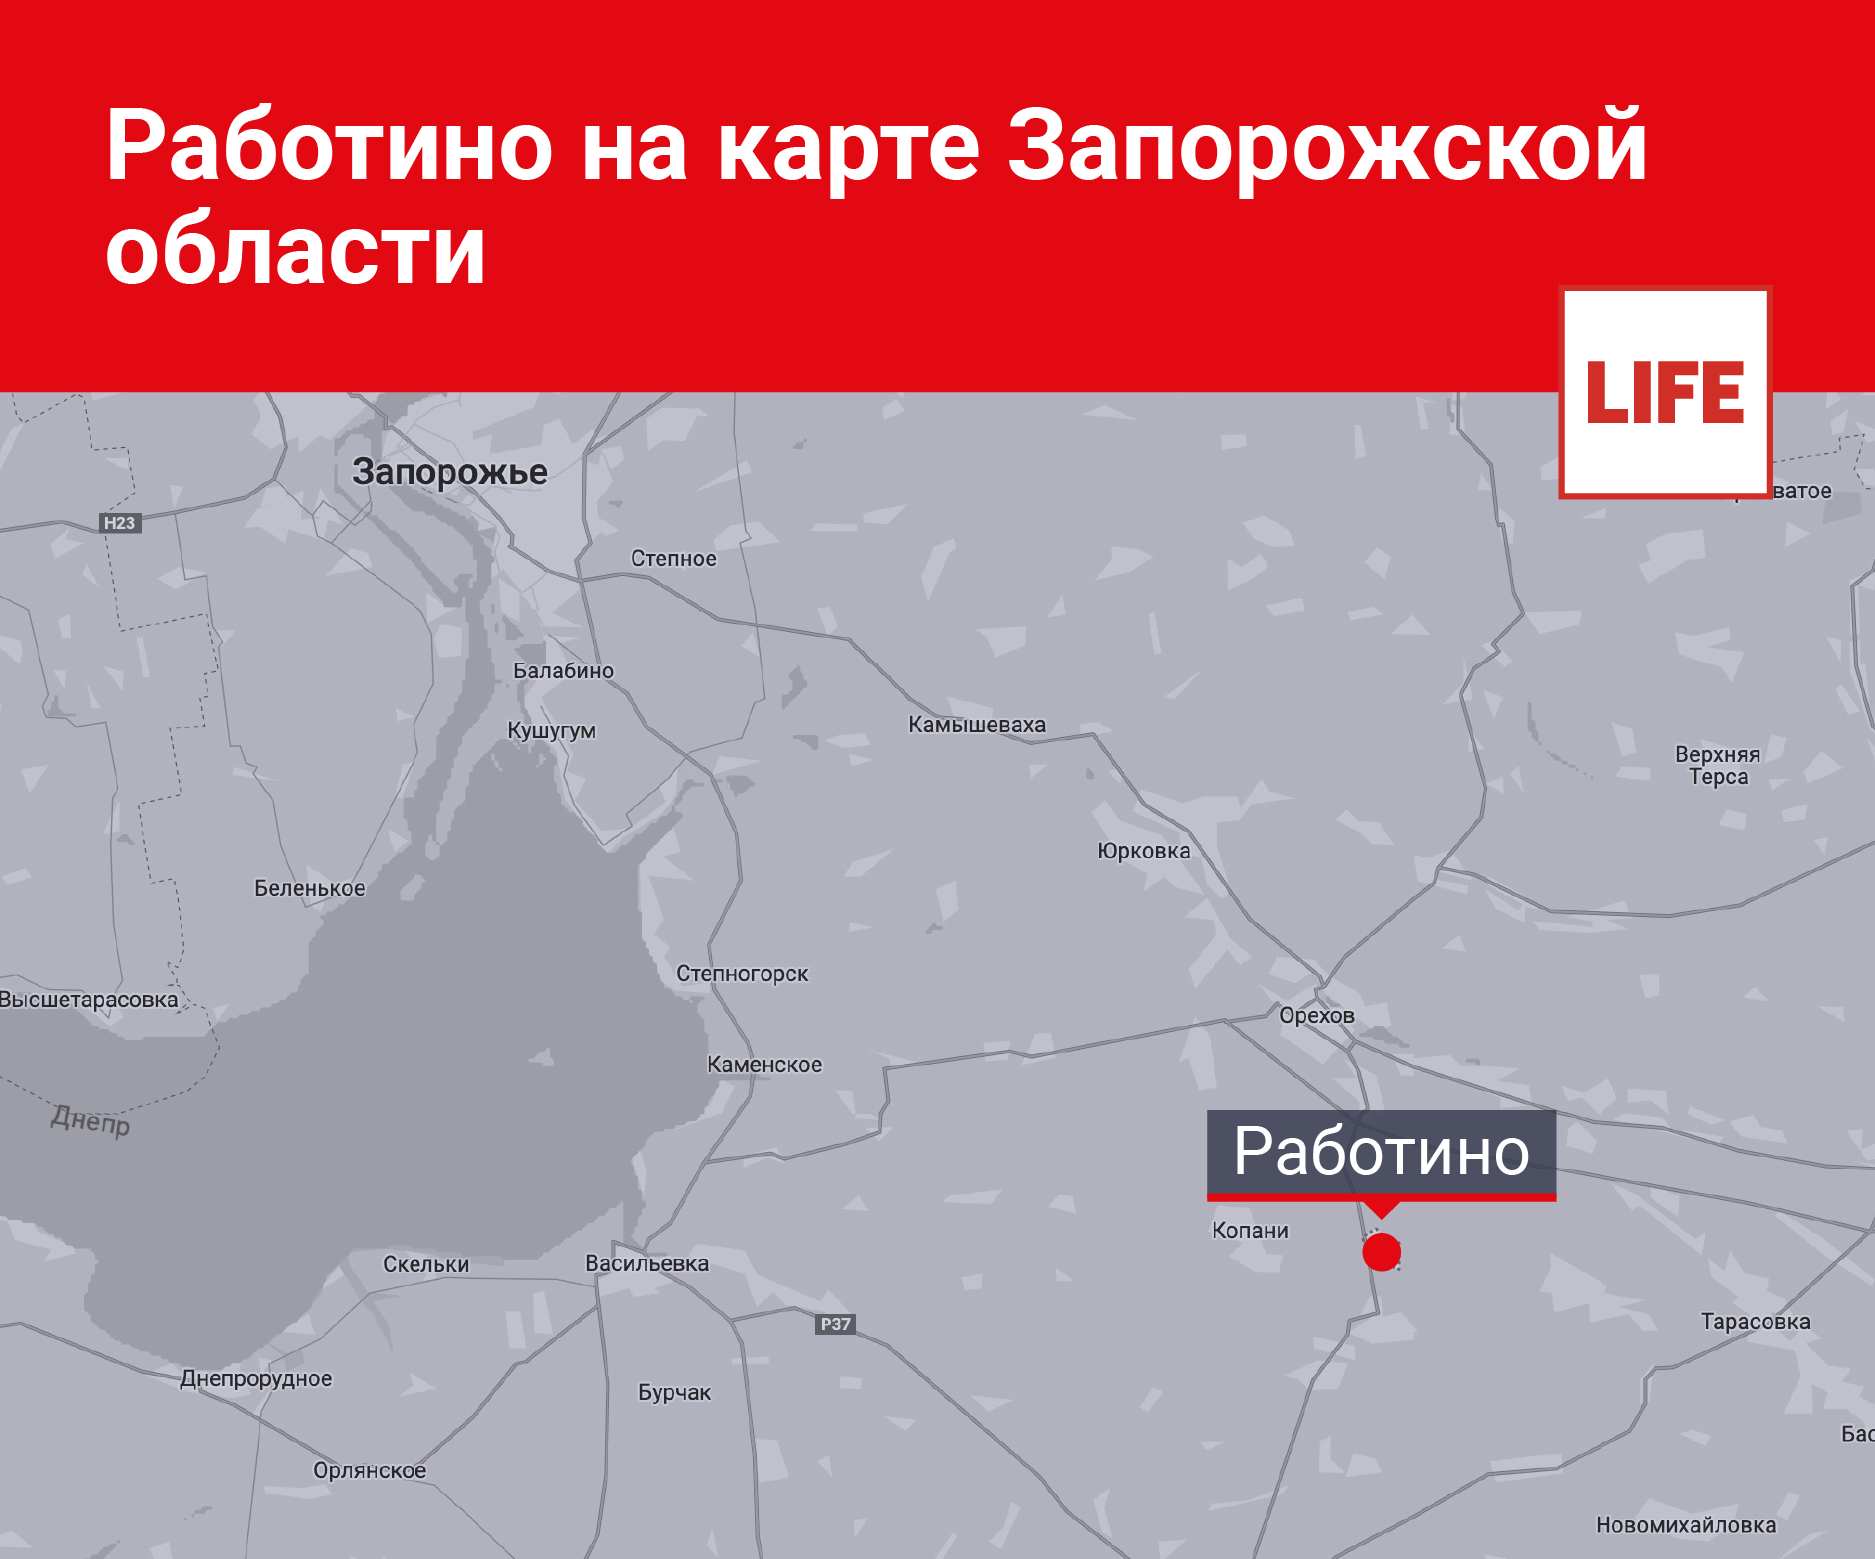 Работино на карте запорожской области. Инфографика © LIFE